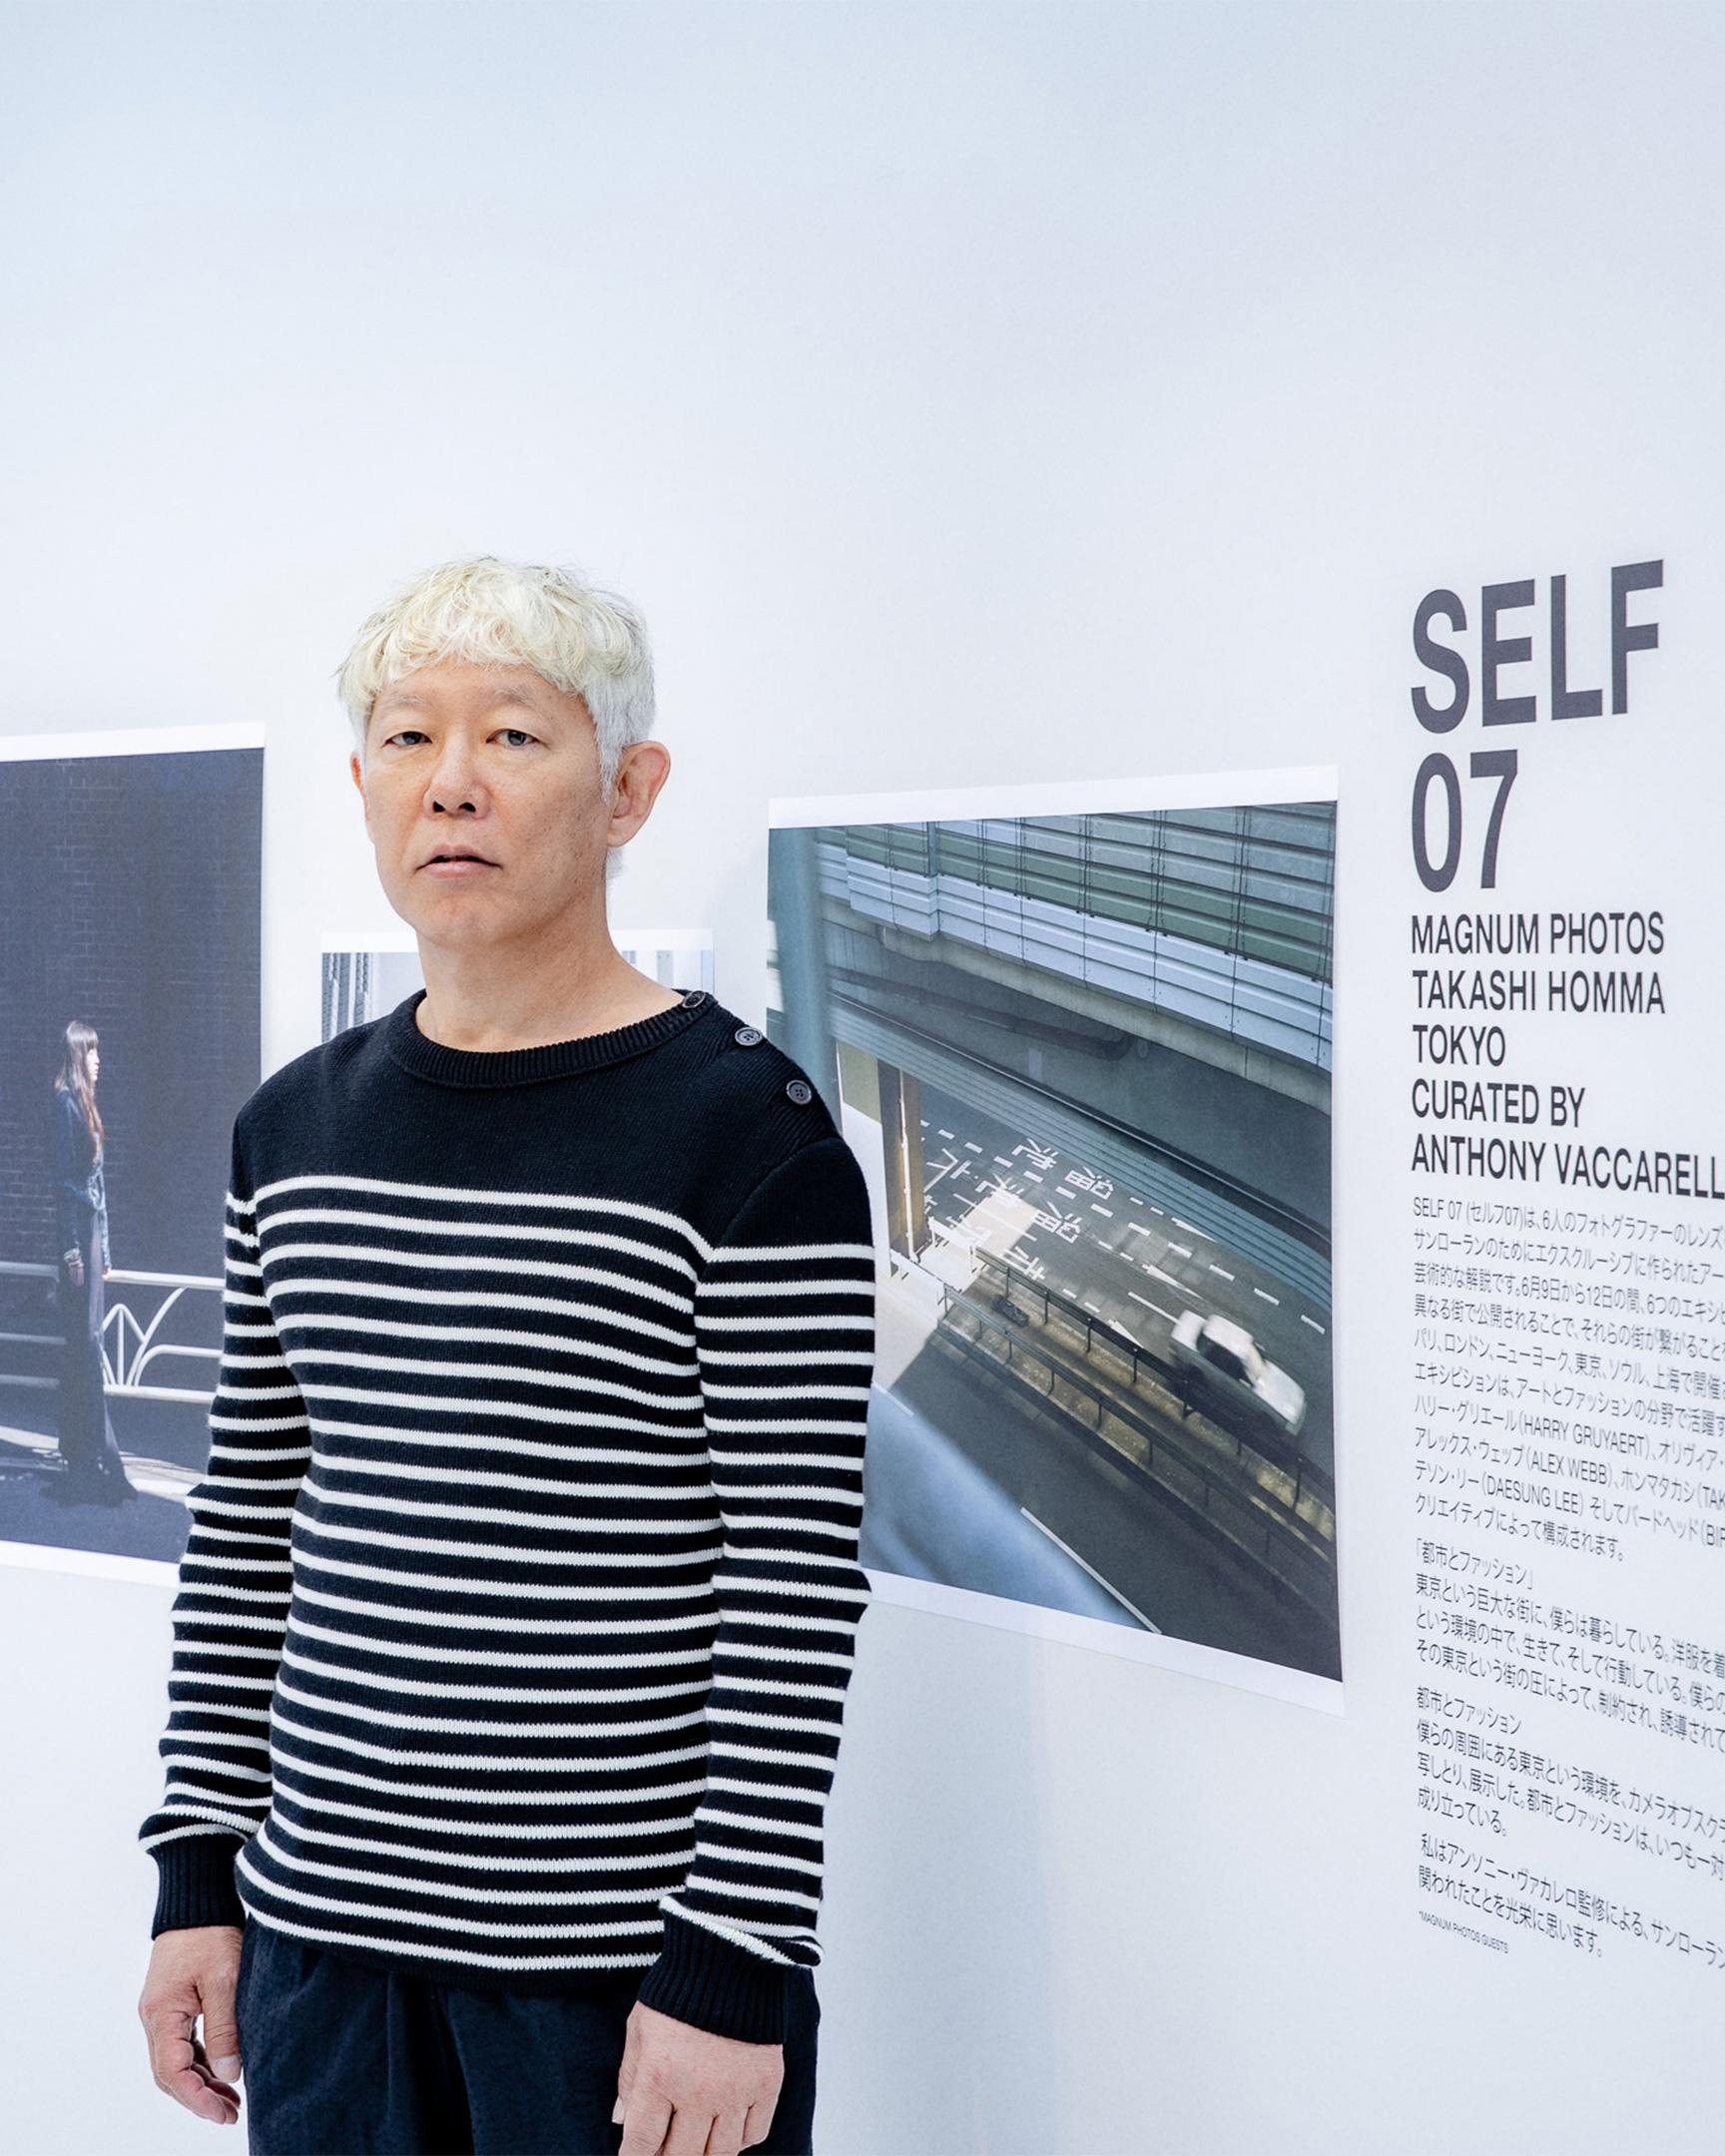 ホンマタカシが語るサンローランのアートプロジェクト「SELF 07」。